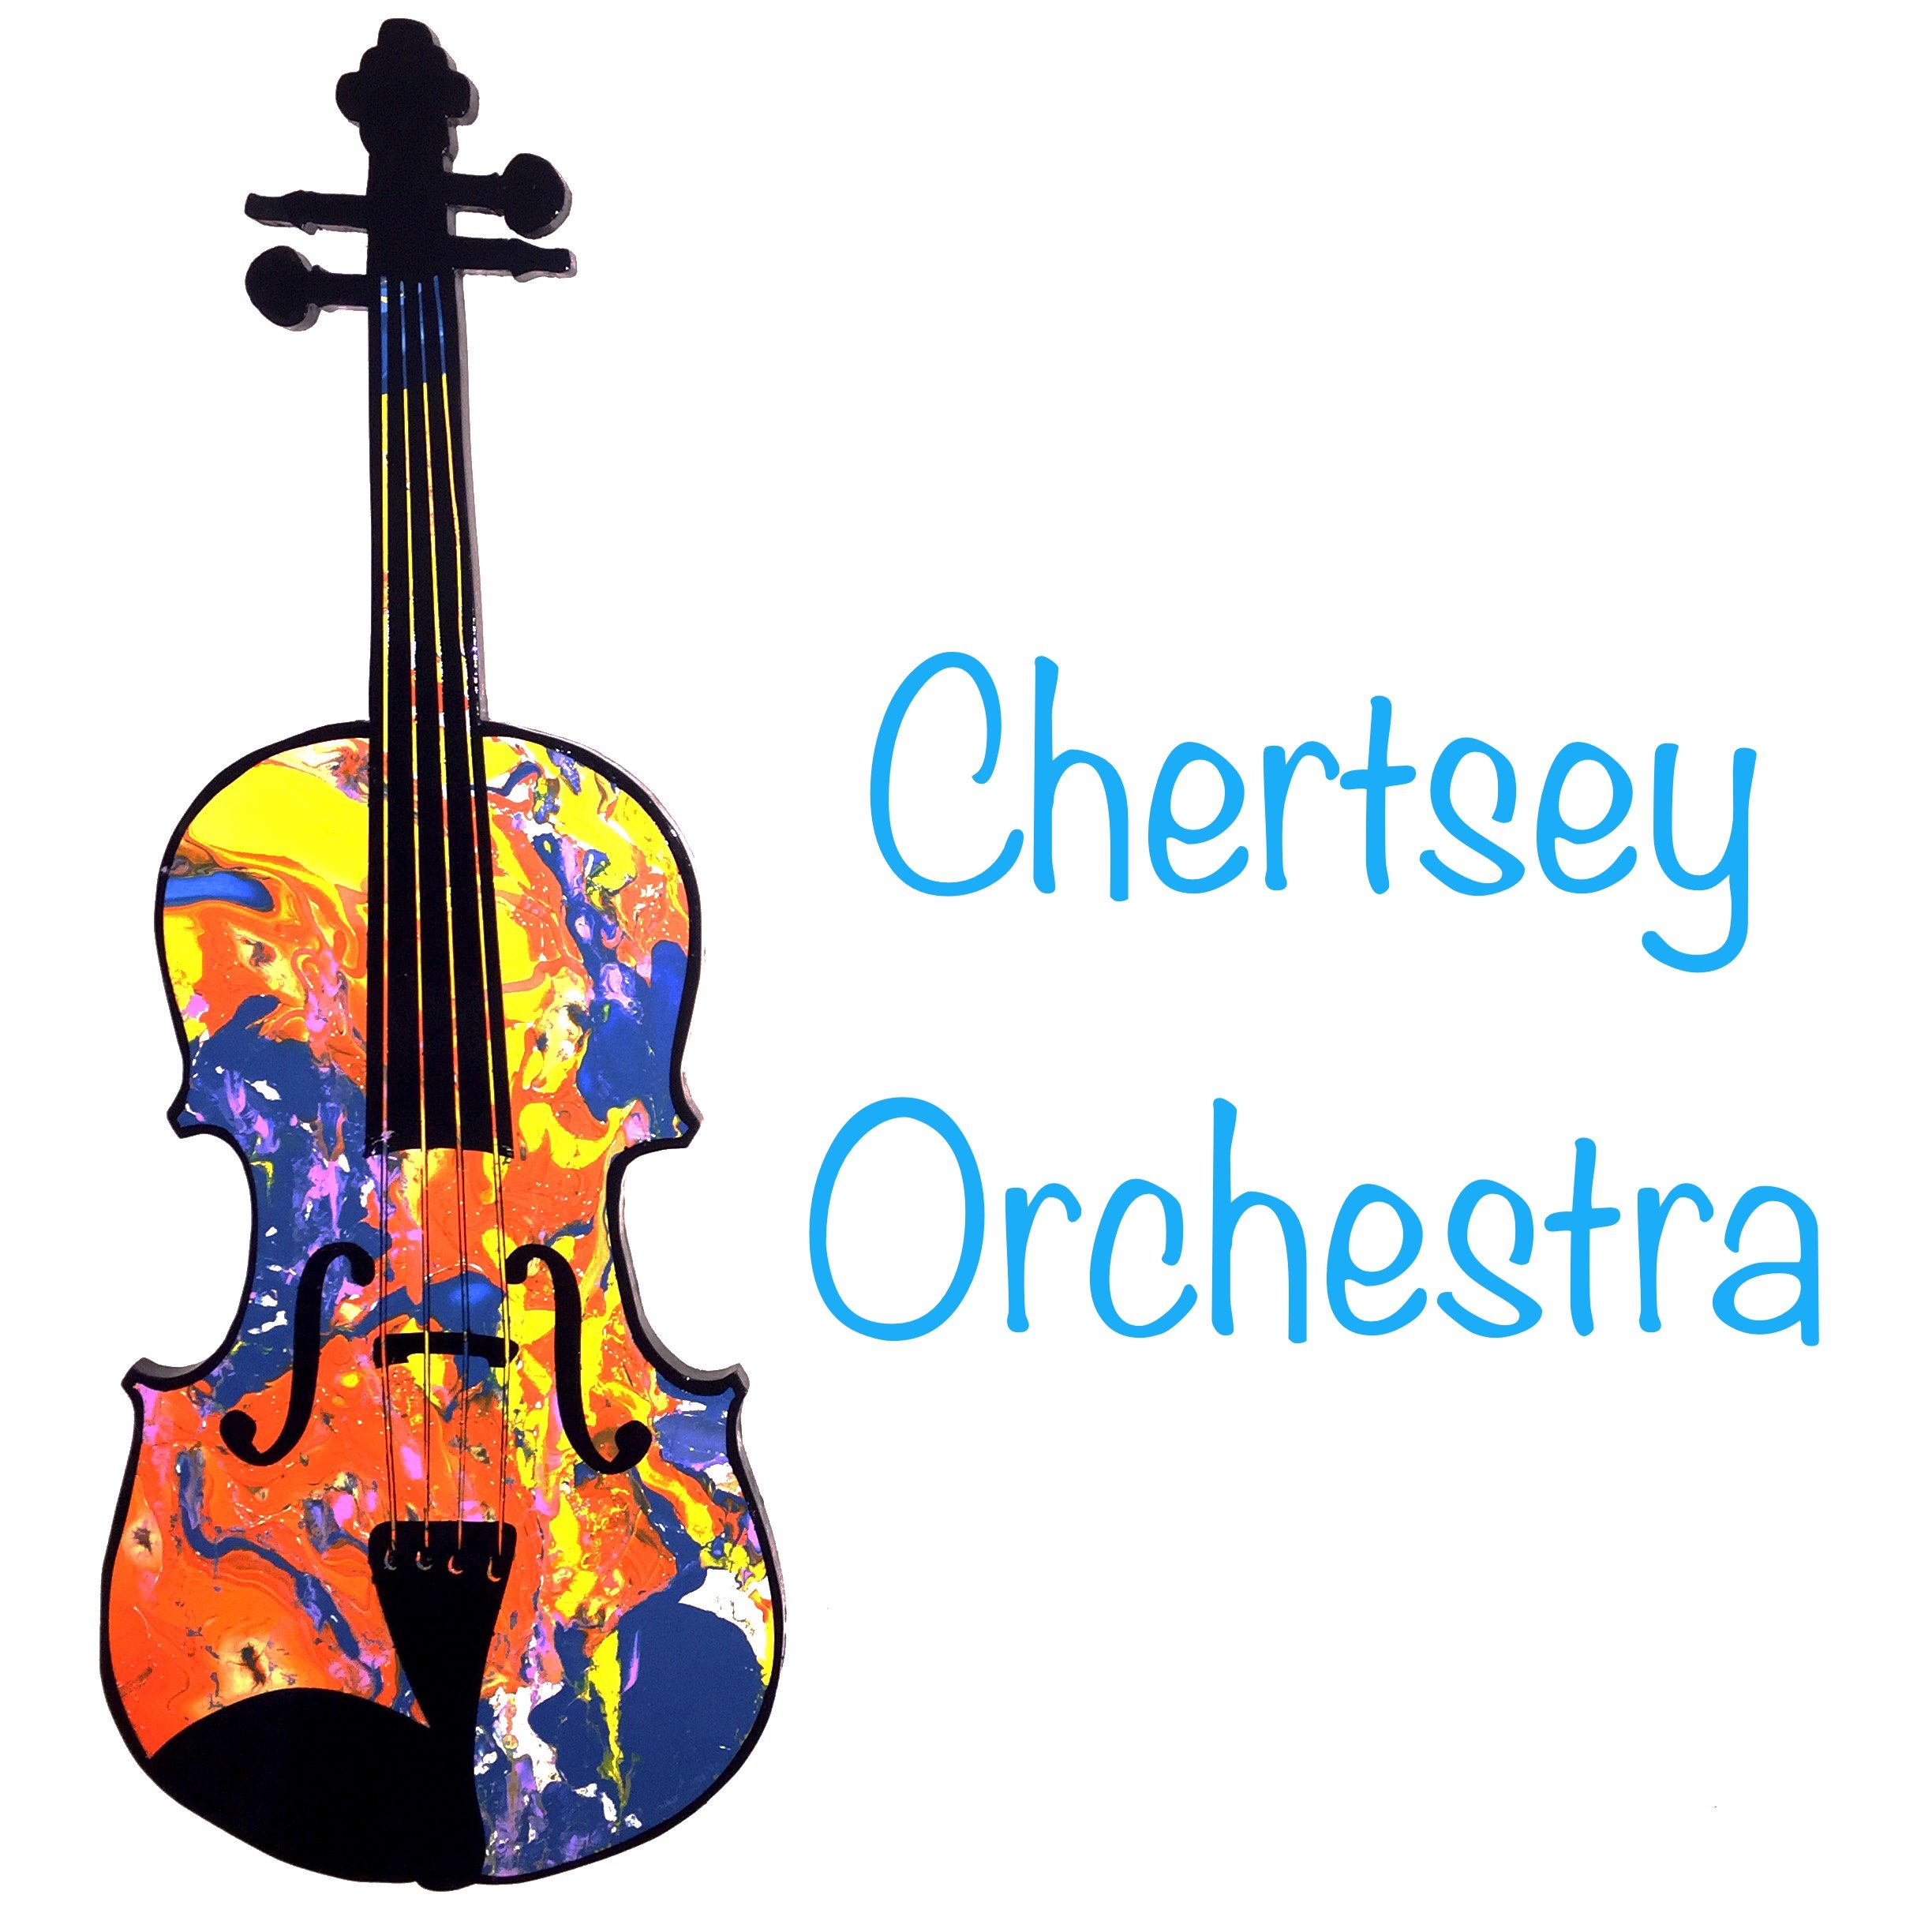 Chertsey Orchestra